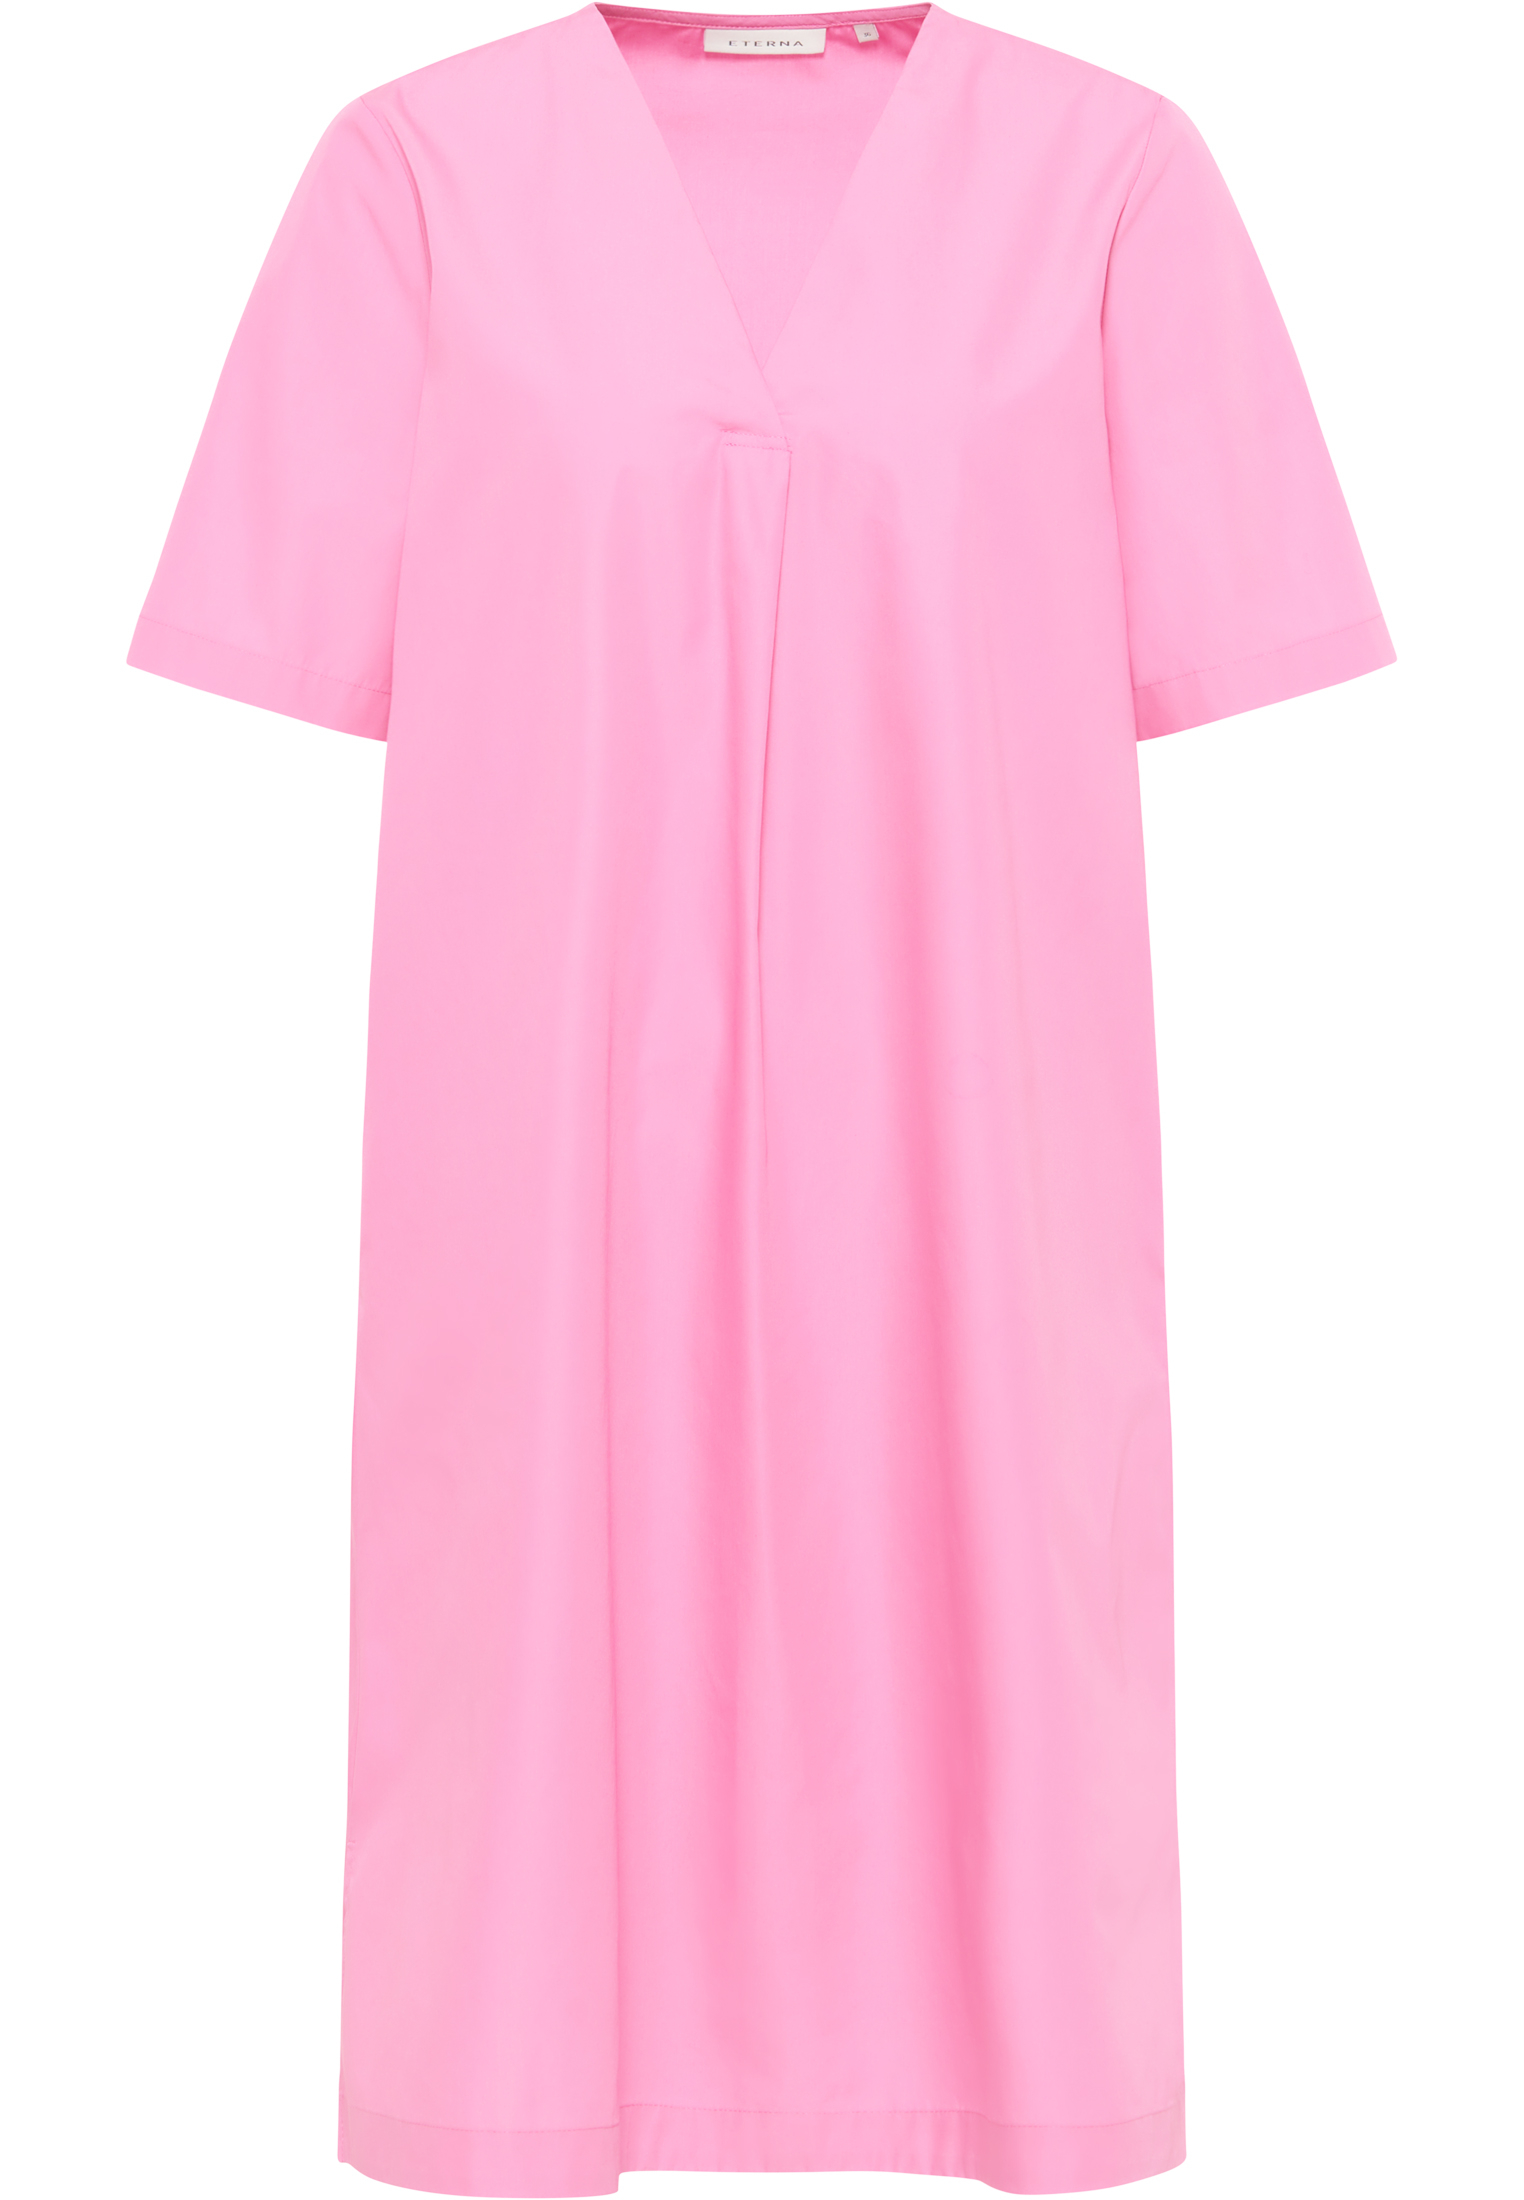 Blusenkleid in pink unifarben | pink | 34 | Kurzarm | 2DR00211-15-21-34-1/2